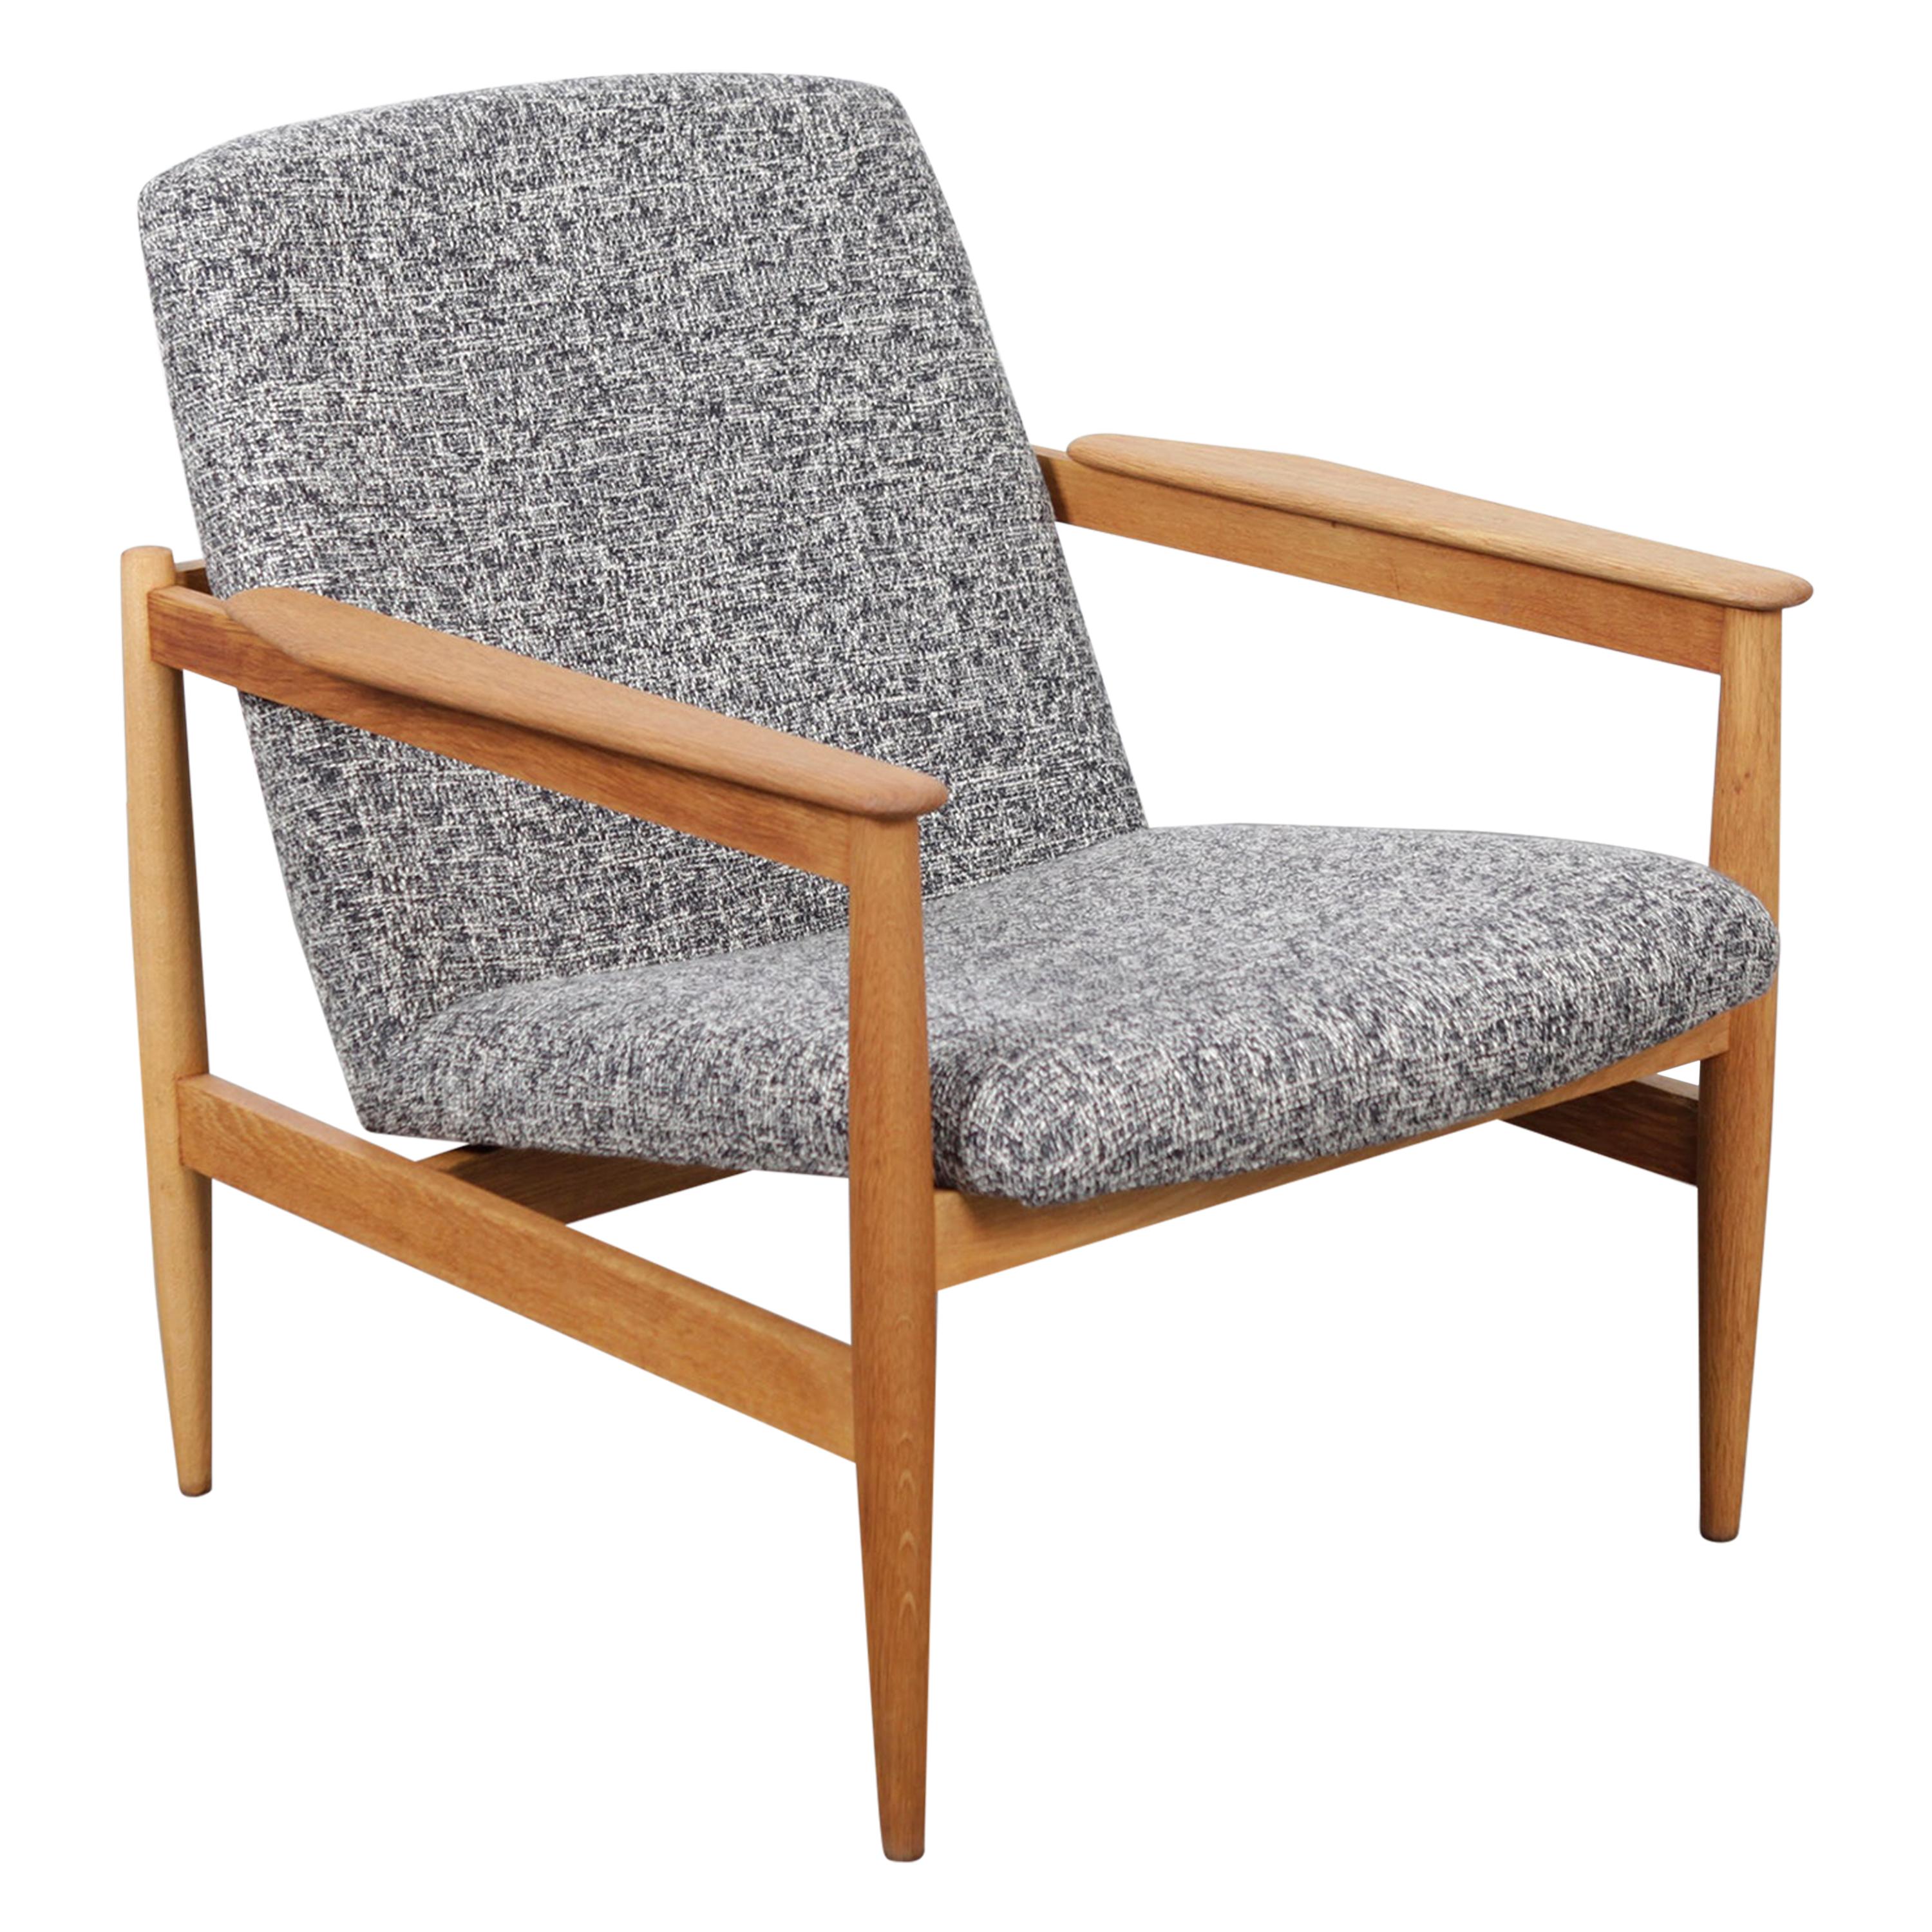 1960s Swedish Midcentury Oak Framed Upholstered Lounge Chair